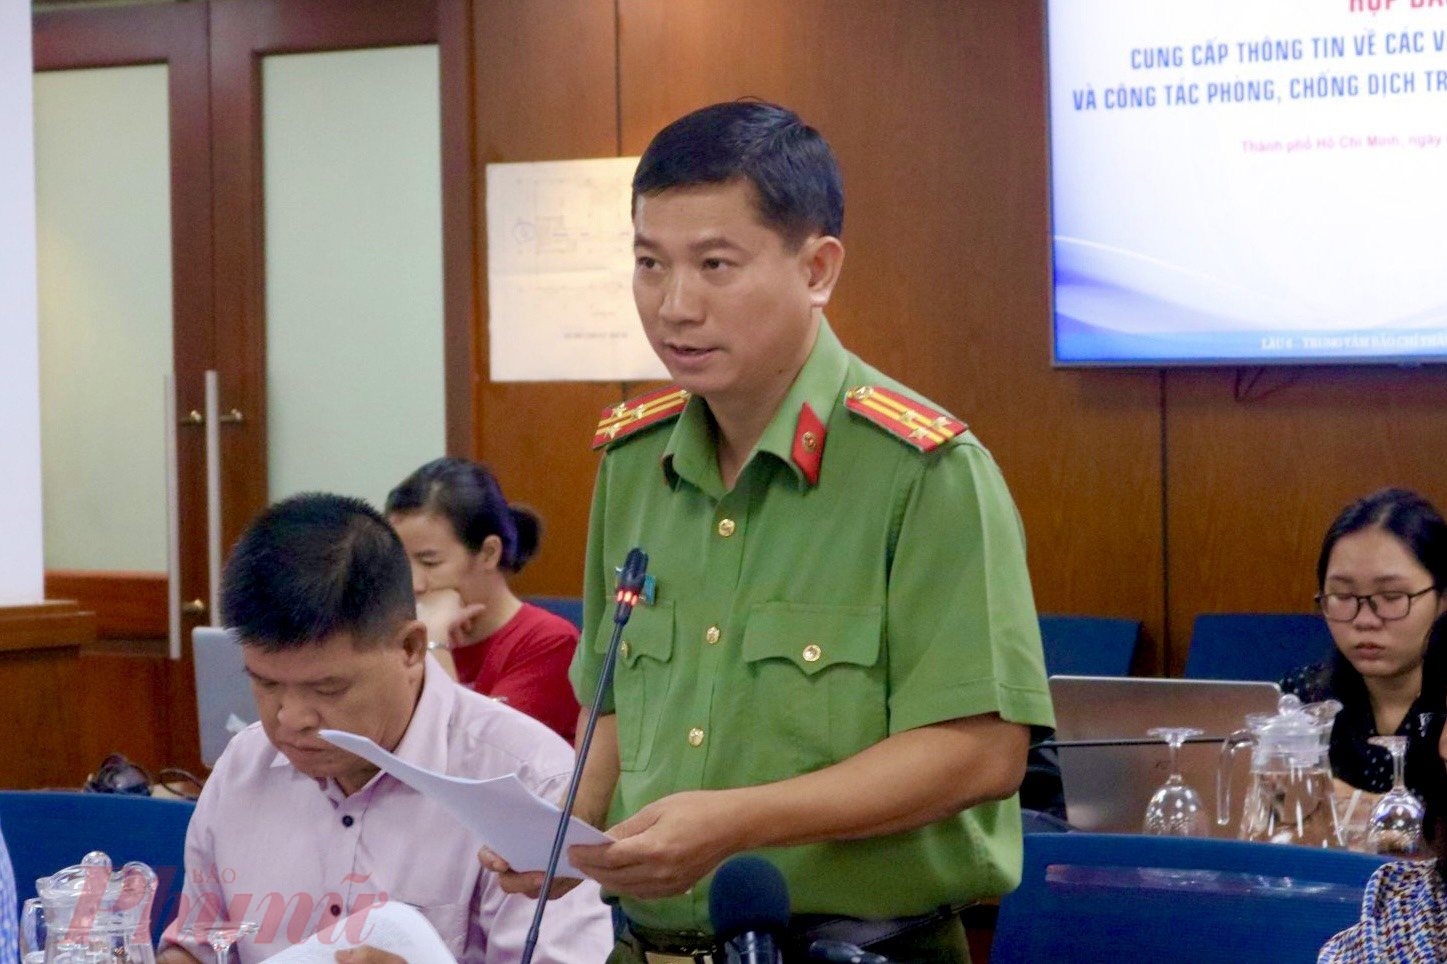 Thượng tá Lê Mạnh Hà -  Phó trưởng phòng tham mưu Công an TPHCM đã thông tin về việc xử lý các tổ chức tín dụng đen trên địa bàn TPHCM